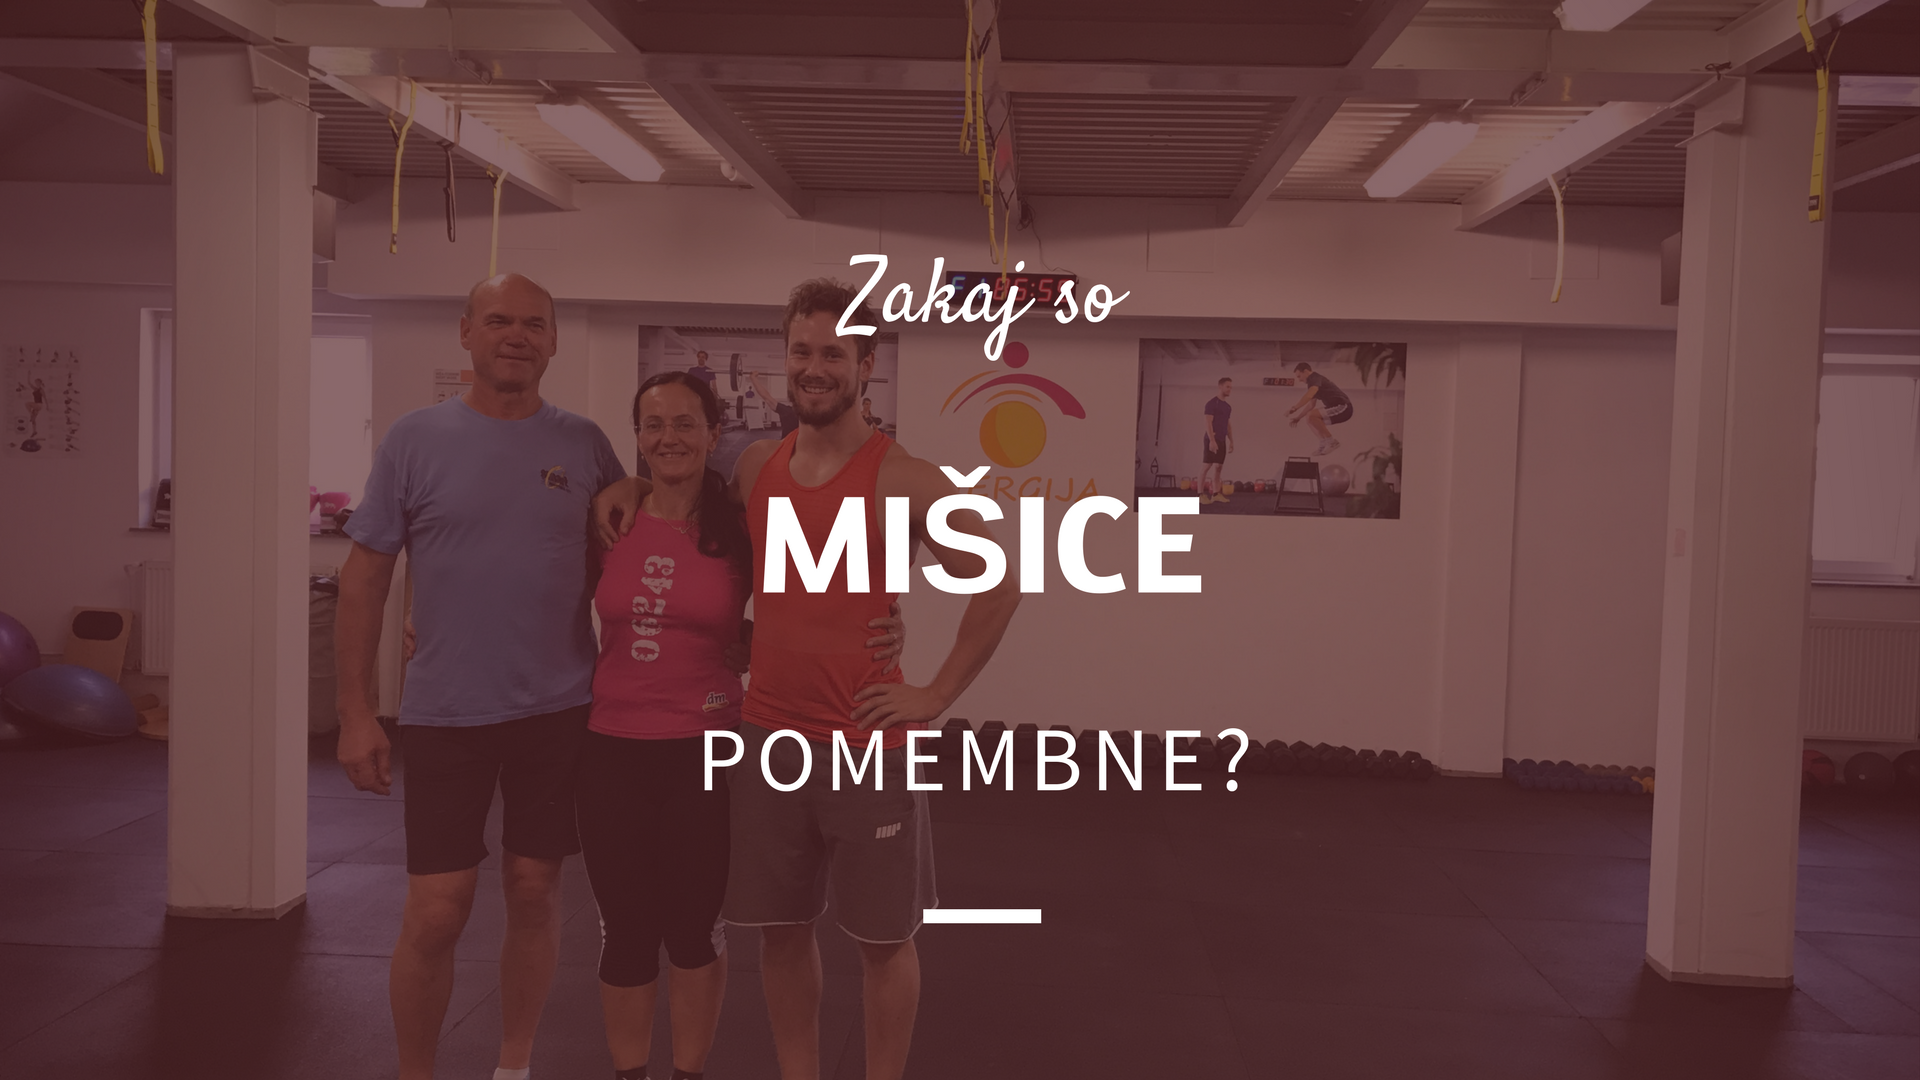 You are currently viewing Zakaj so mišice pomembne?